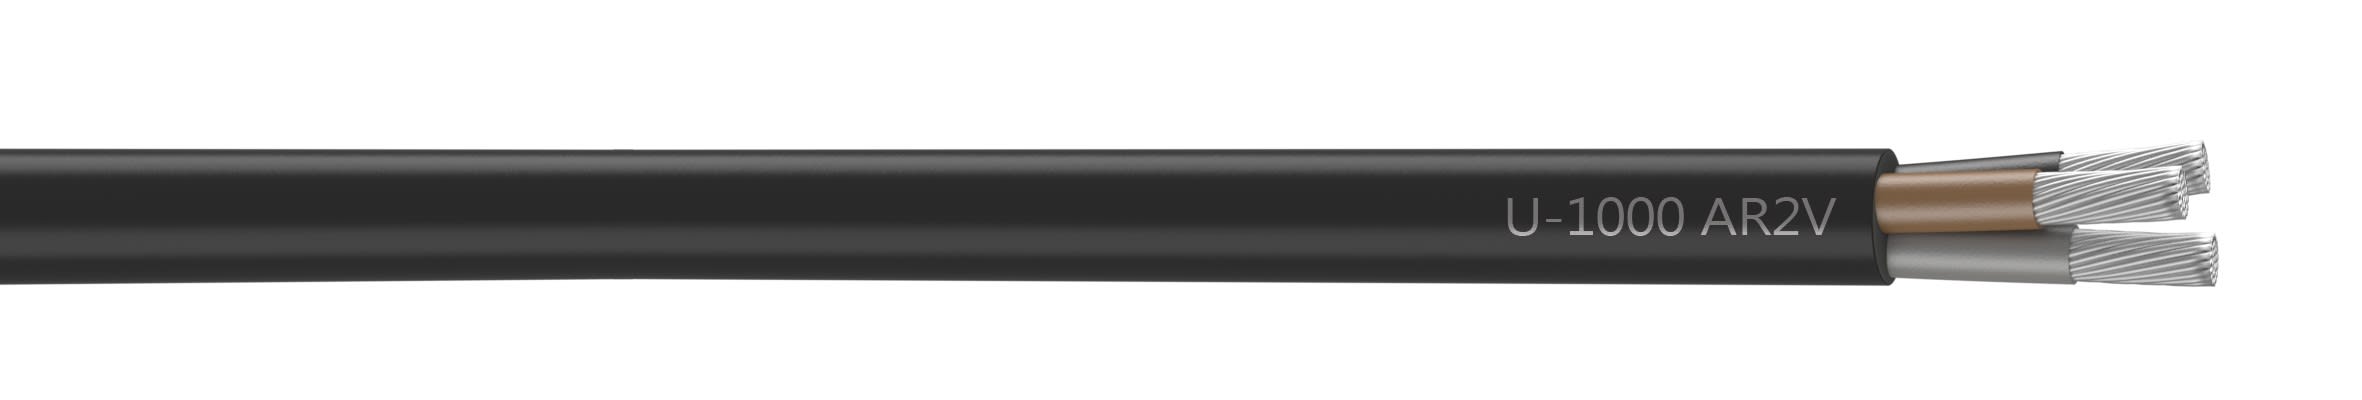 Nexans - Câble rigide U-1000 AR2V aluminium 3x95 longueur à la coupe